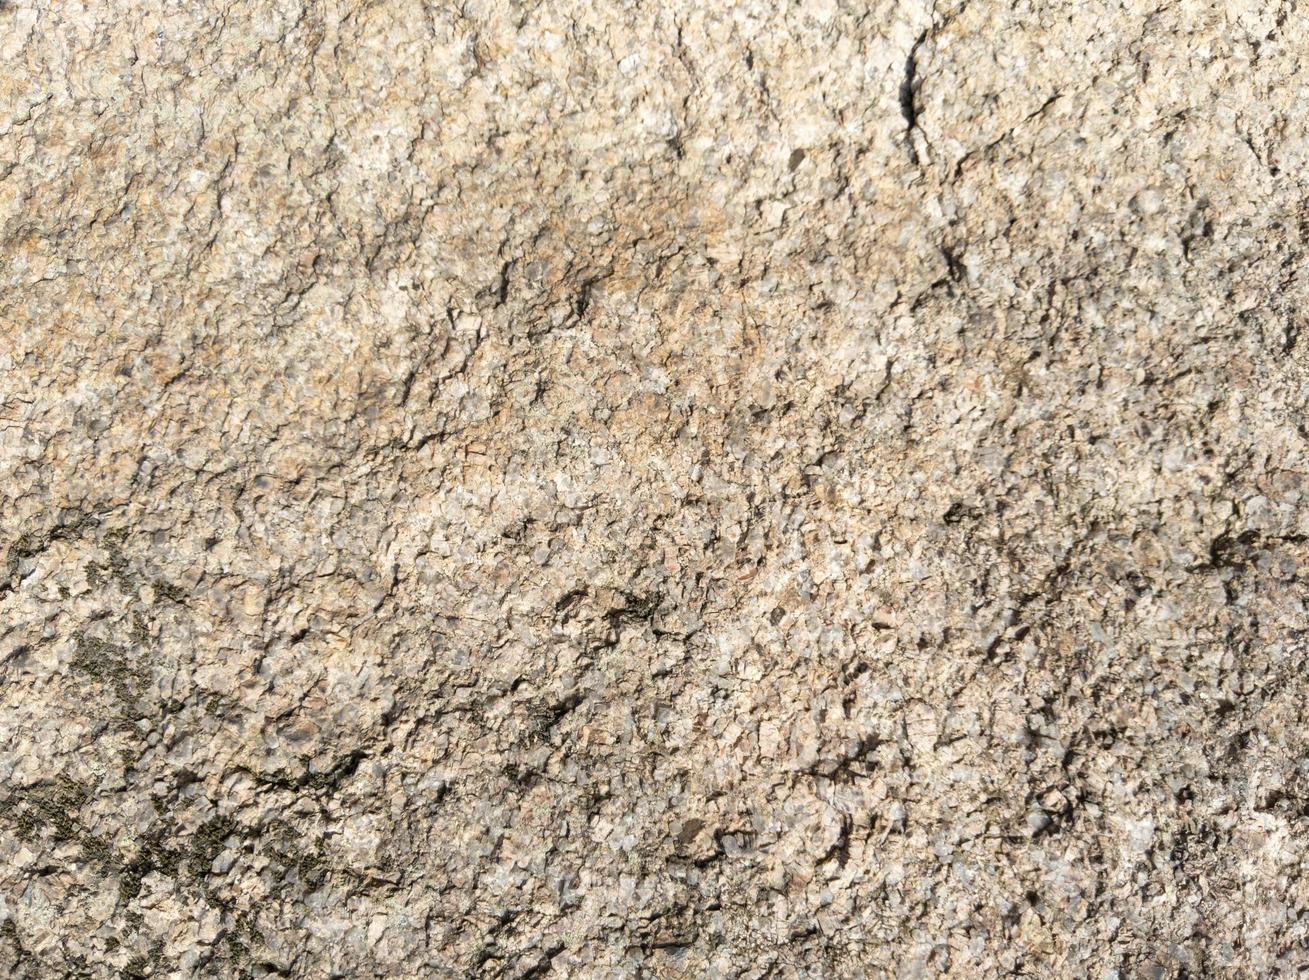 rocas textura y fondo. foto de stock de la naturaleza.